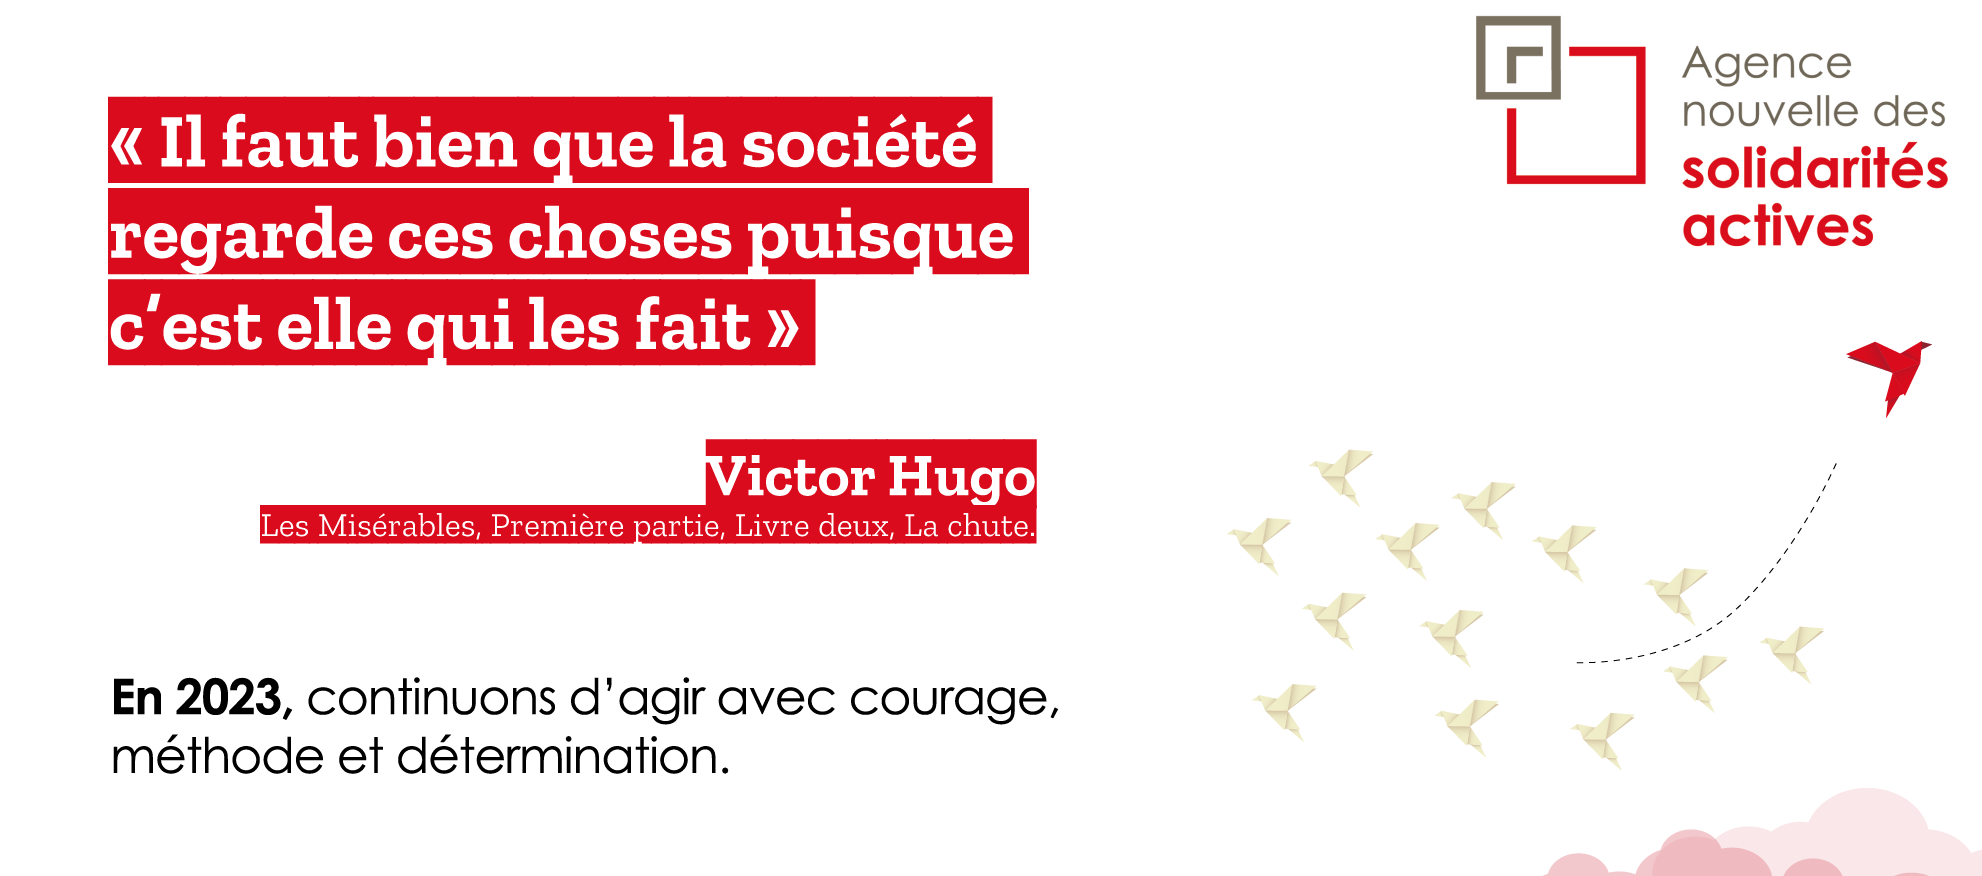 "Il faut bien que la société regarde ces choses puisque c'est elle qui les fait" - Victor Hugo. En 2023, continuons d'agir avec courage, méthode et détermination. 